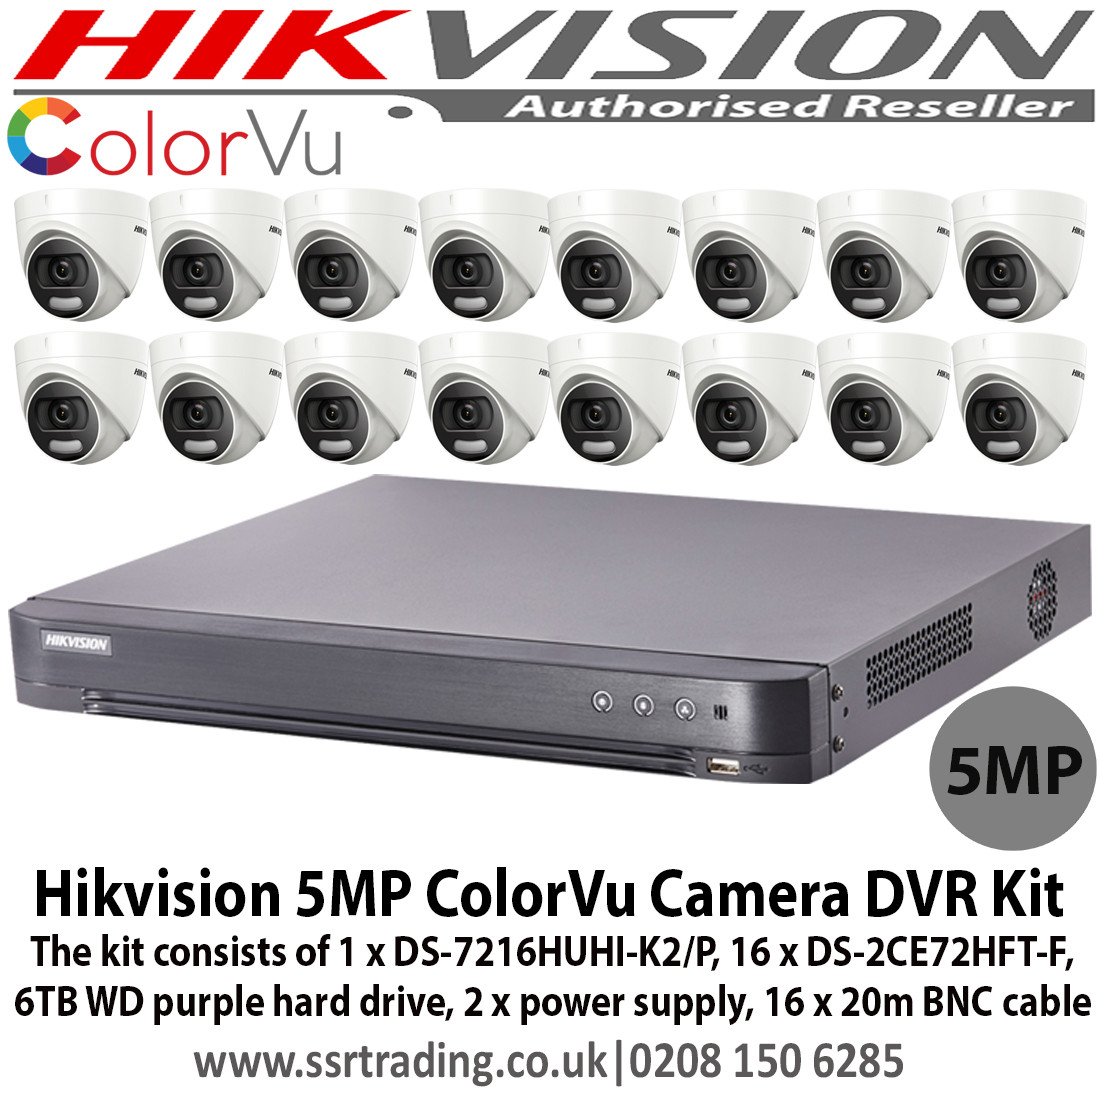 Hikvision HIKVISION CCTV SYSTEM 4K 8MP DVR,5MP DS-2CE72HFT-F COLORVU NIGHT VISION BUNDLE 